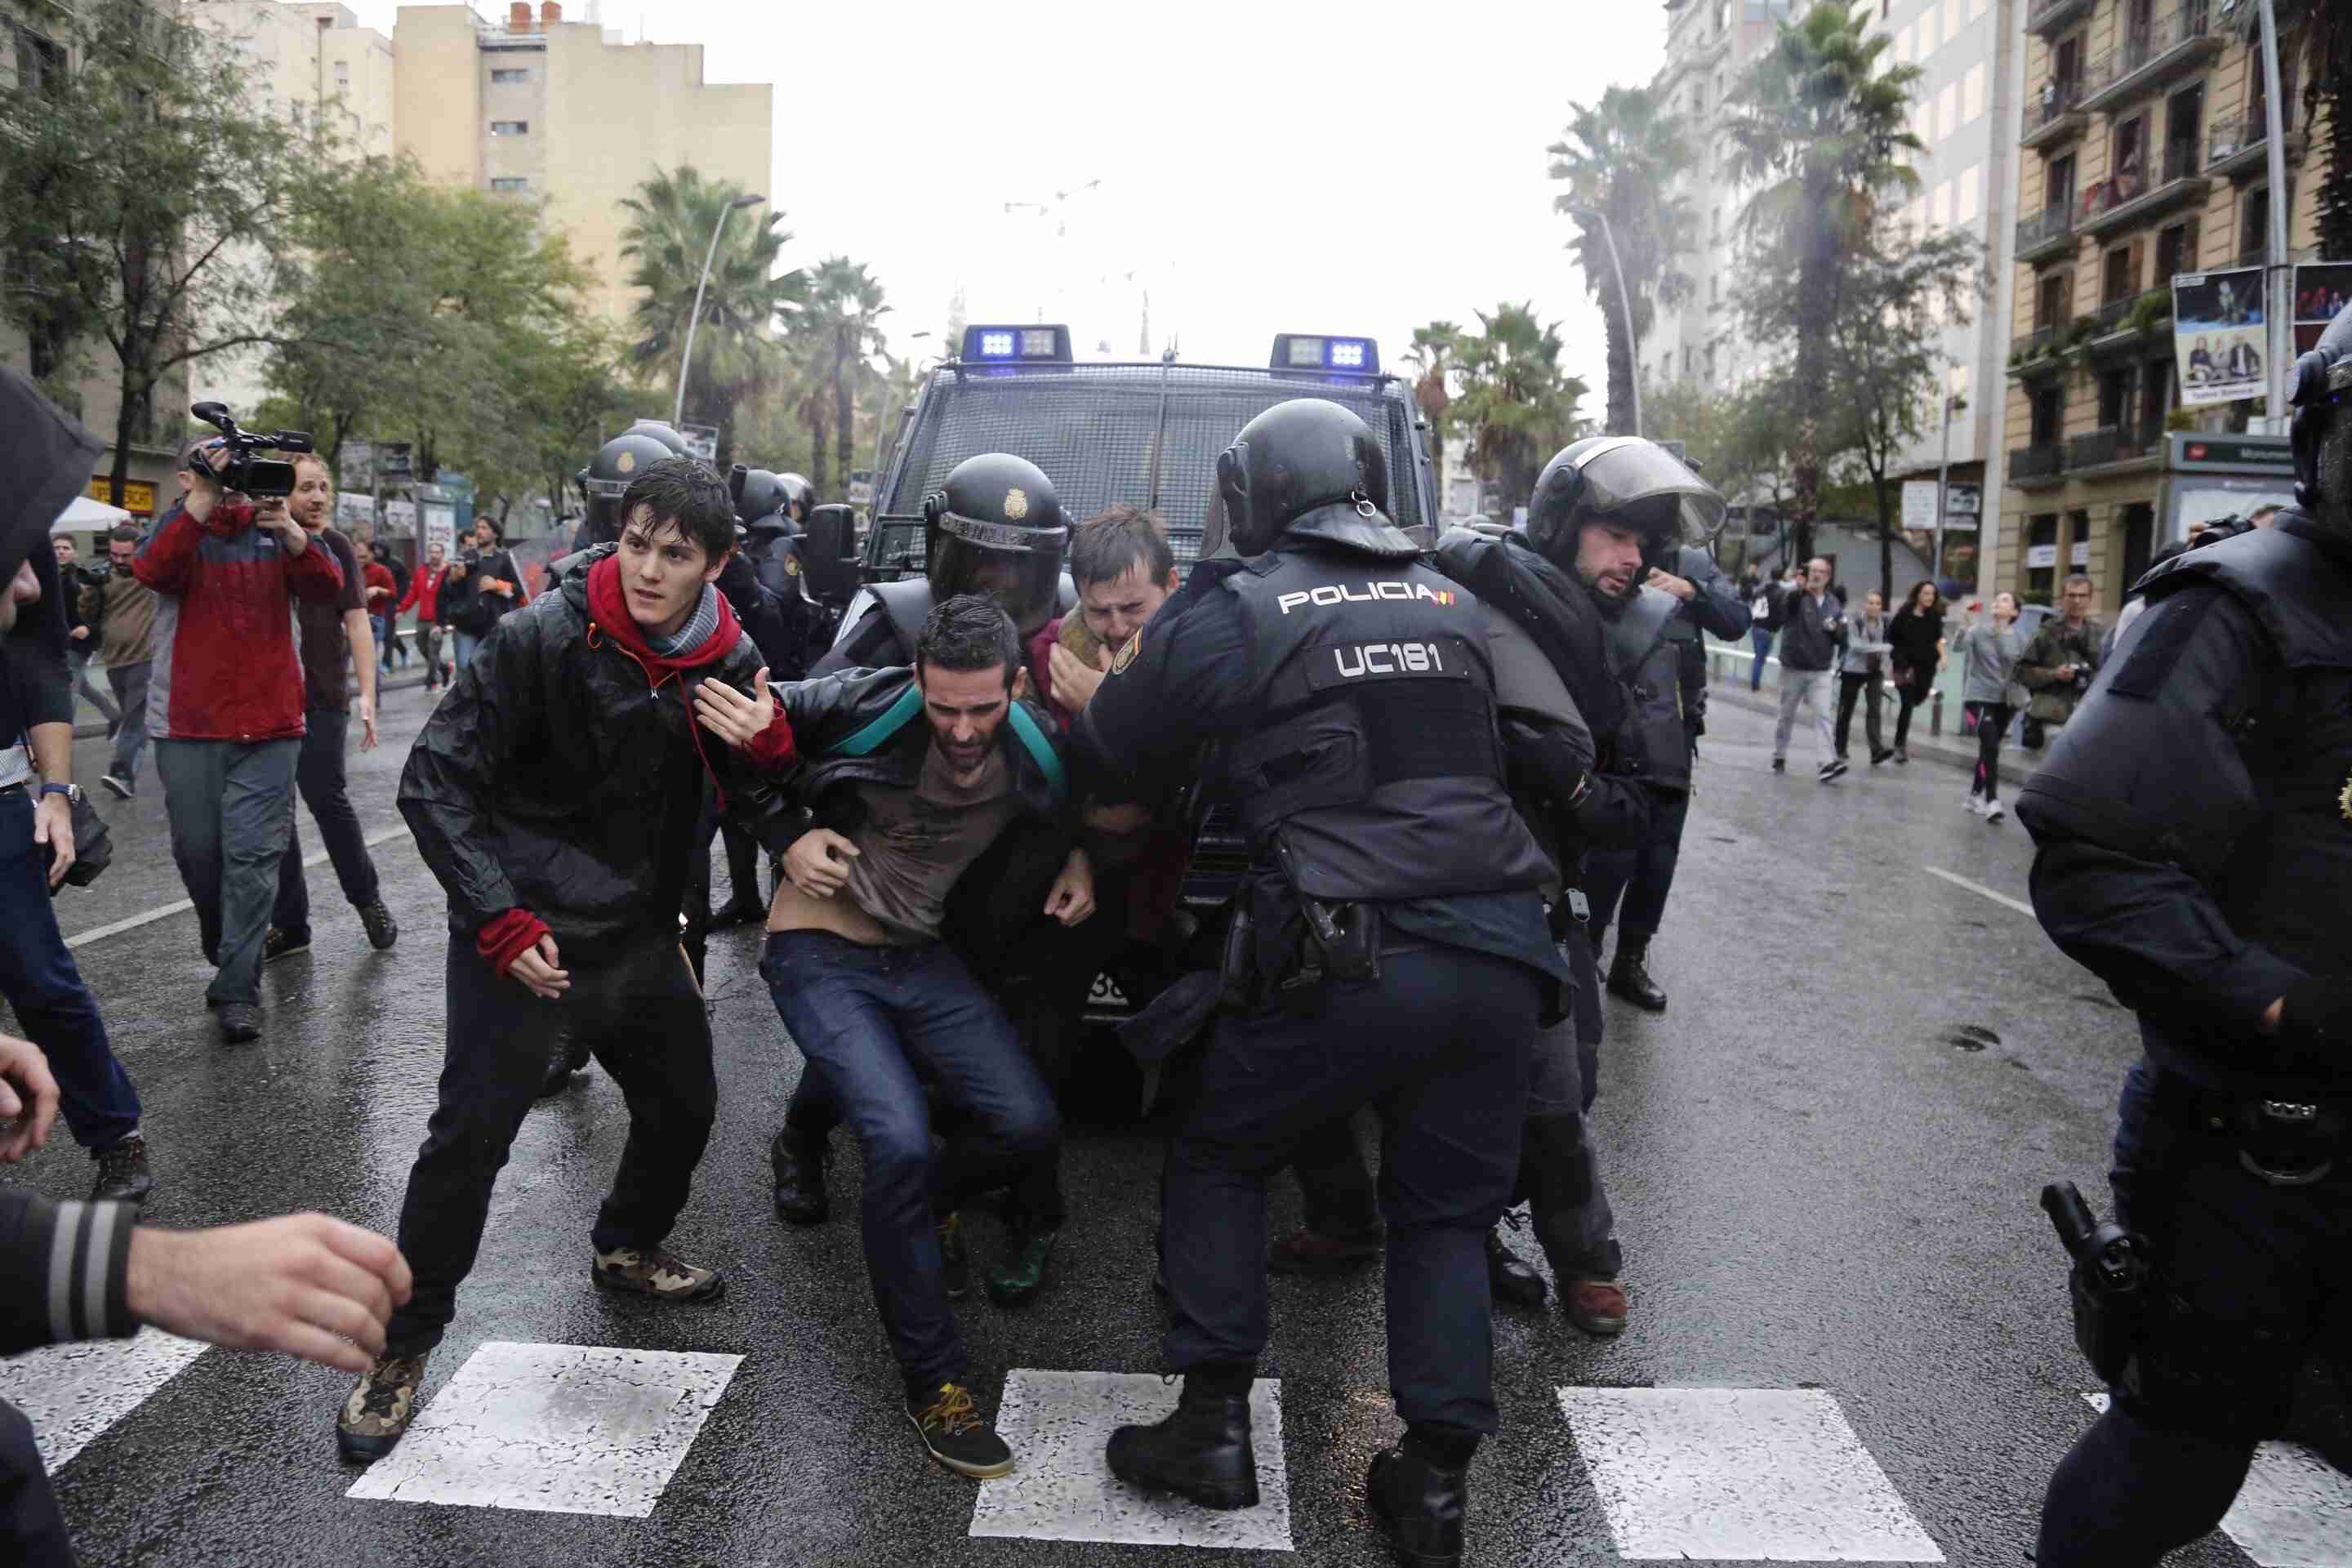 L'Estat descarrega violència policial extrema per impedir votar a Catalunya